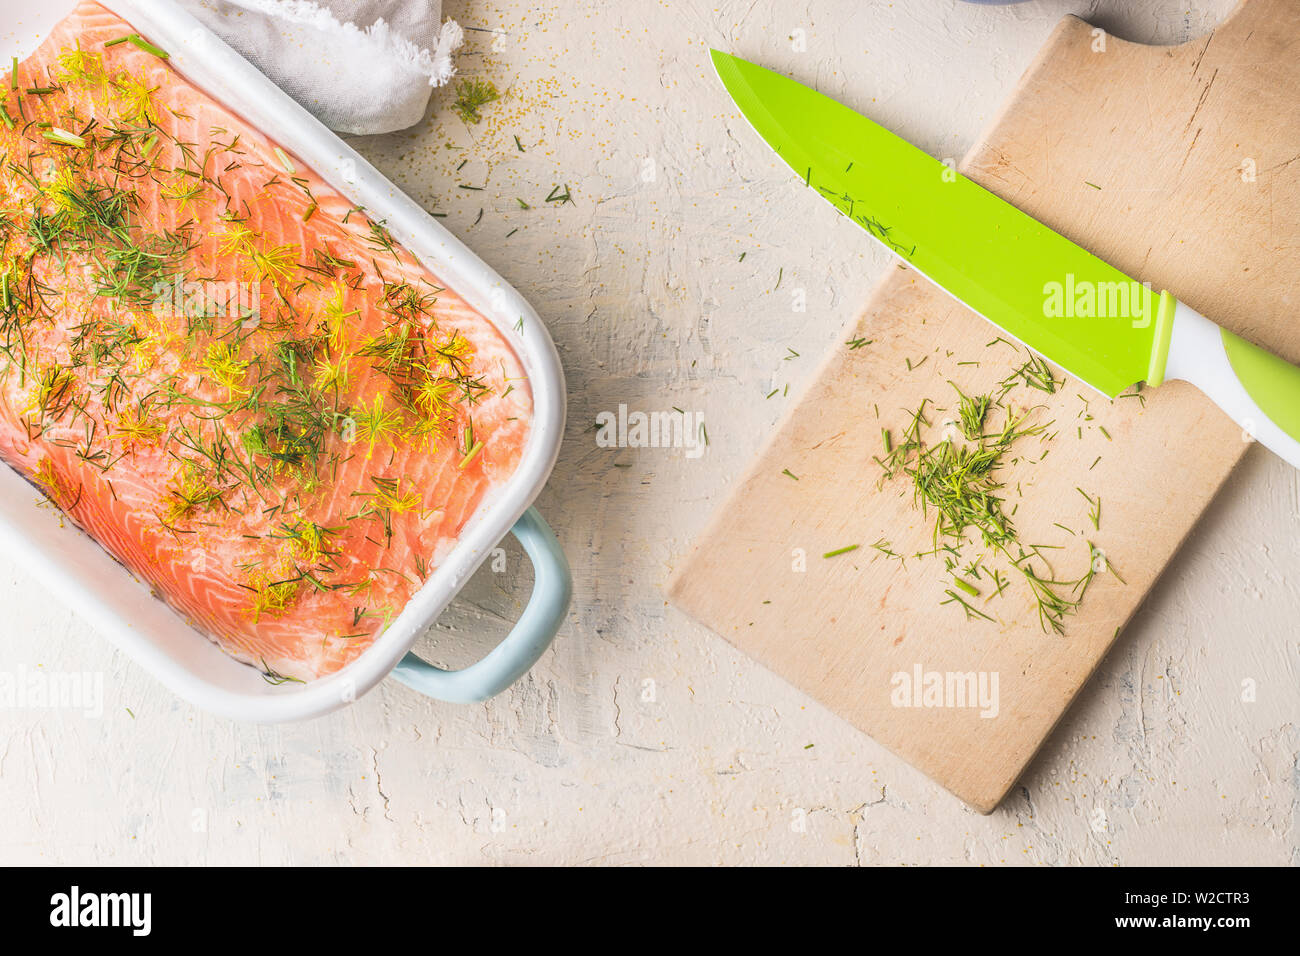 Materie filetto di salmone con aneto in casseruola di bianco su sfondo chiaro con tagliere e coltello da cucina, vista dall'alto. Un sano concetto di frutti di mare. La dieta alimentare. Foto Stock